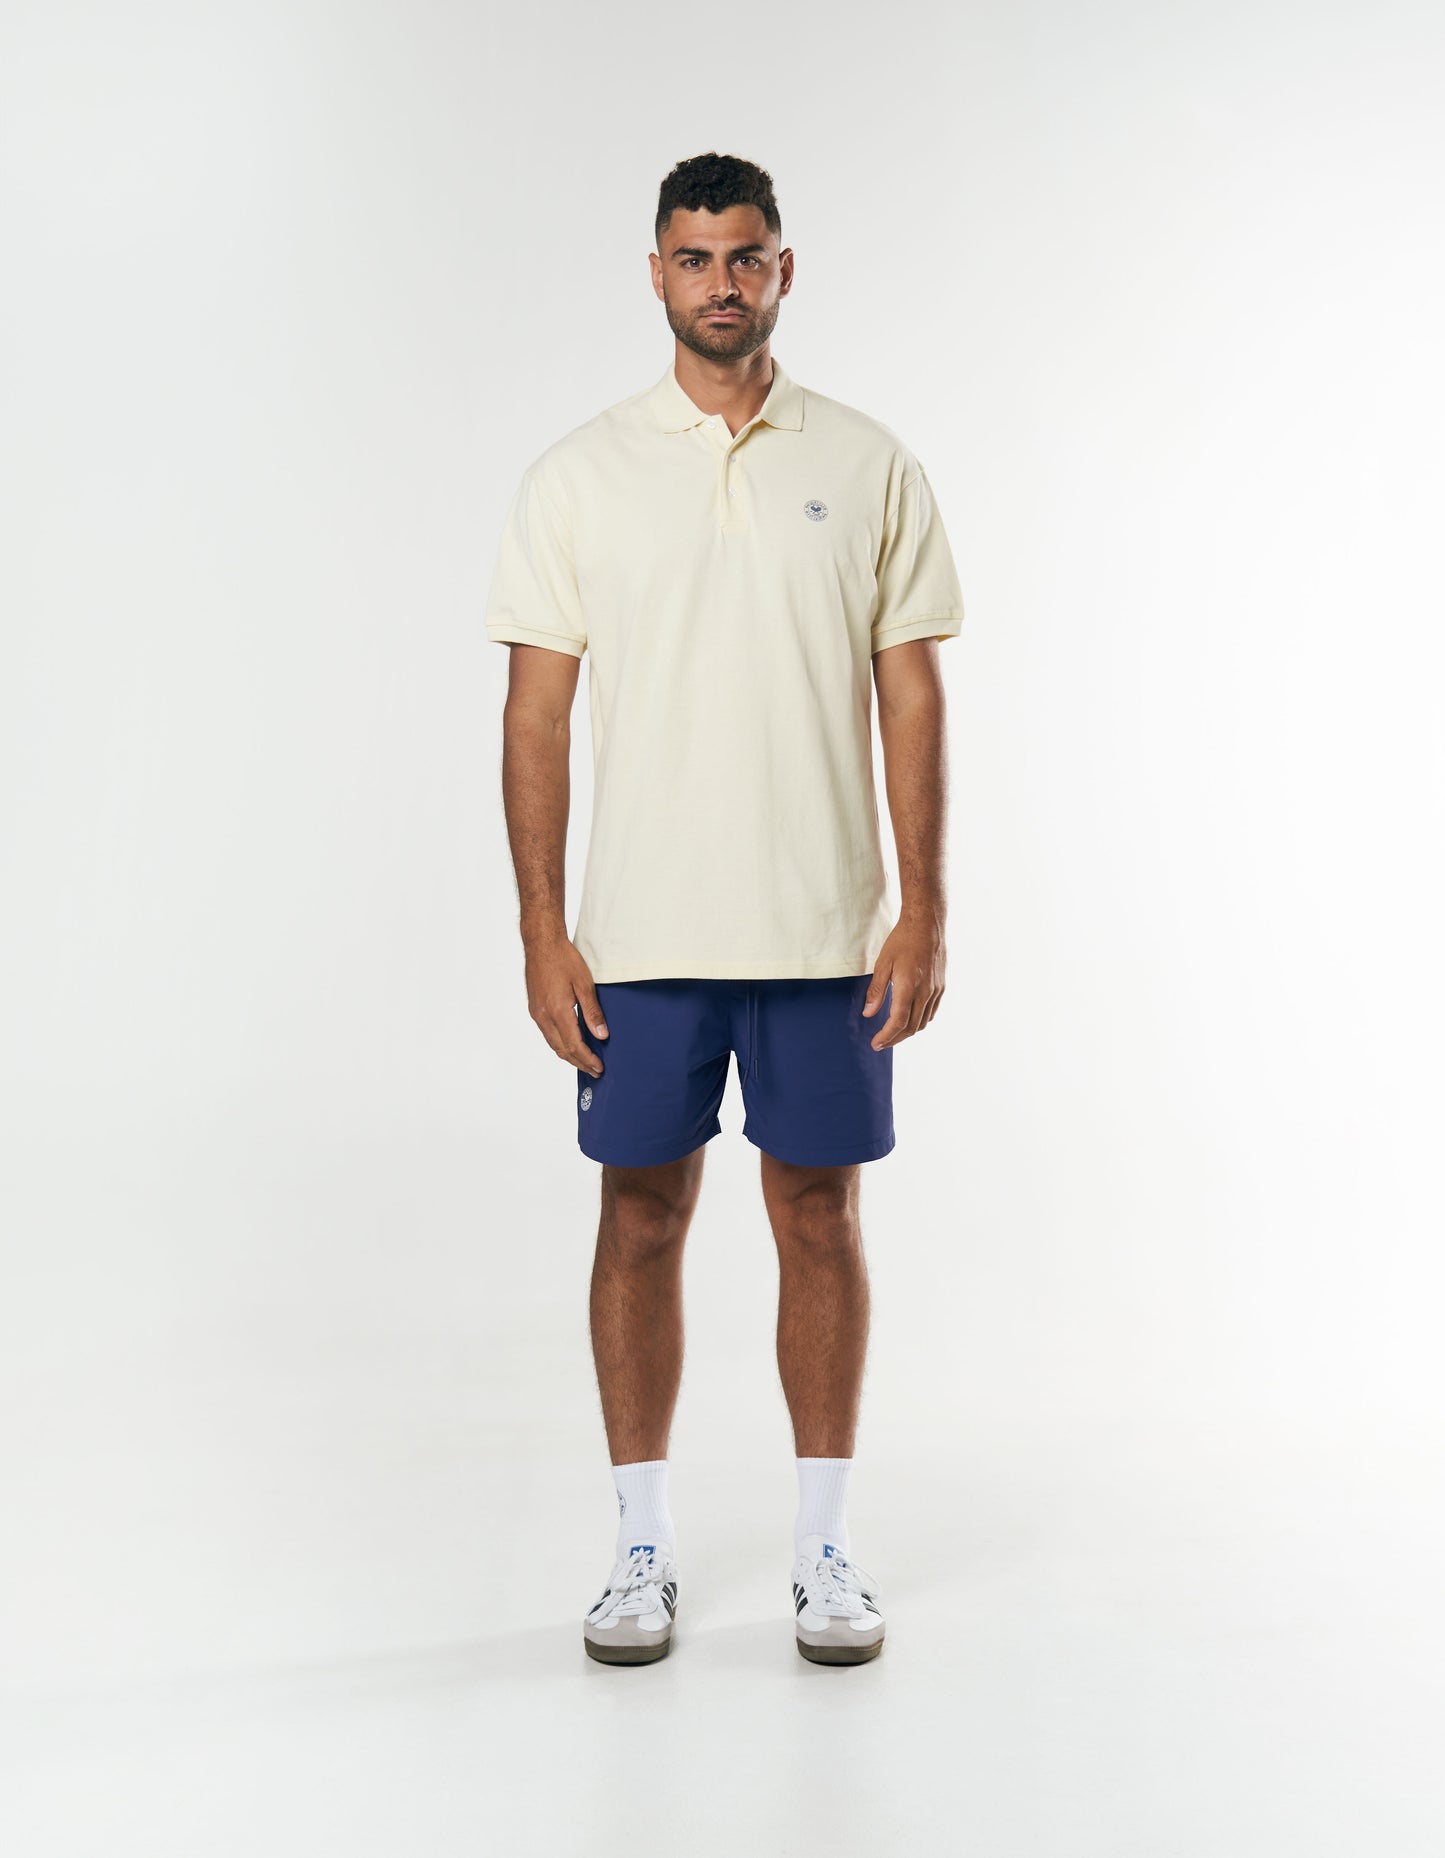 Racquet Club Polo - Cream